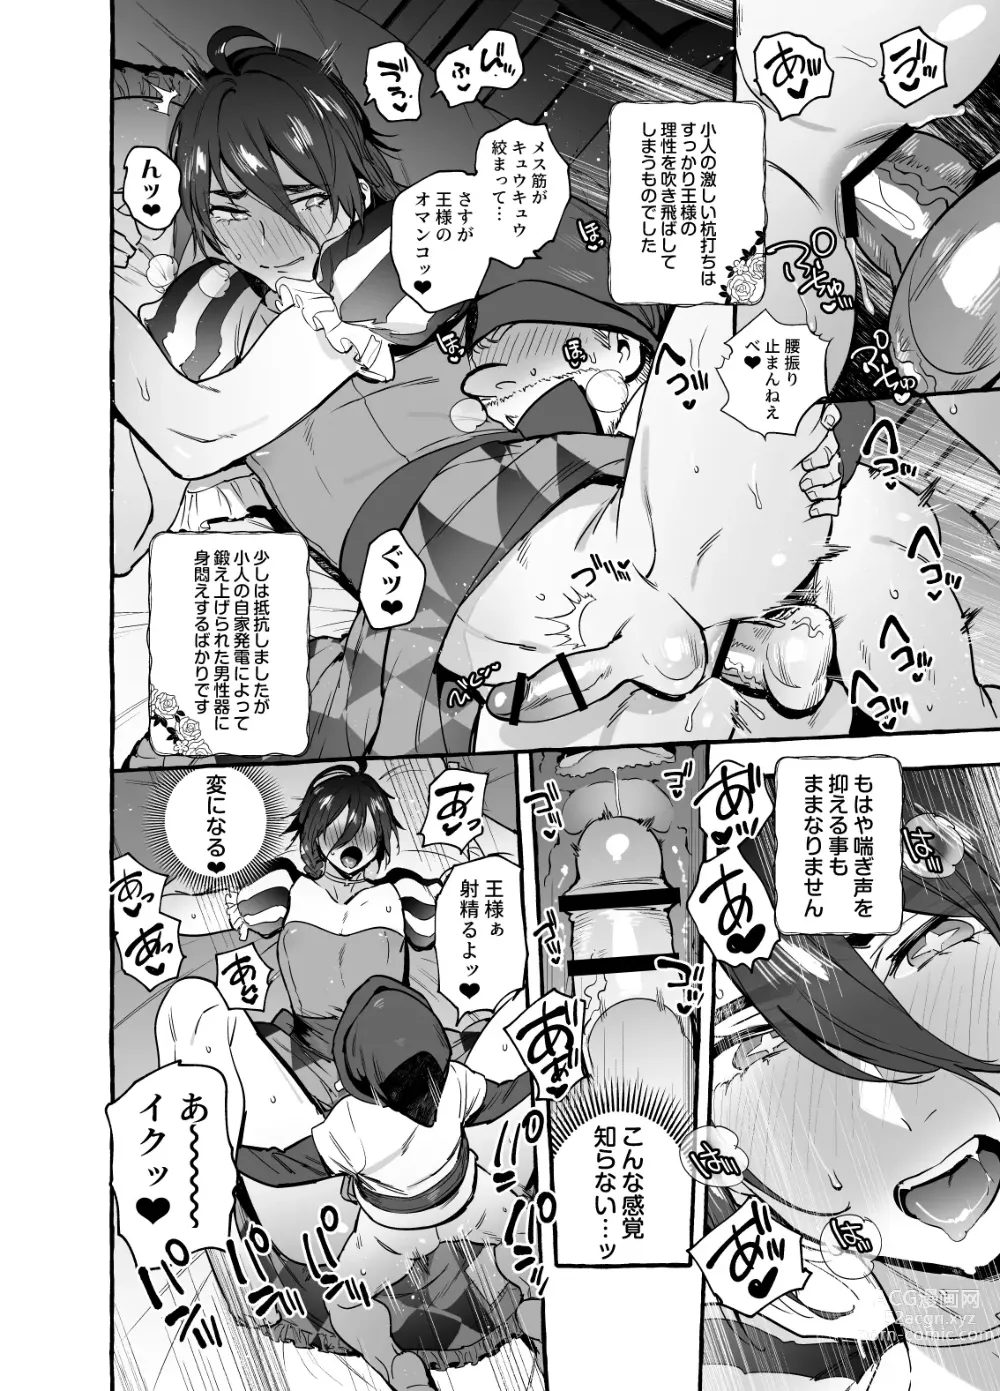 Page 26 of doujinshi Shirayuki Ou to Shichinin no Yaro-domo